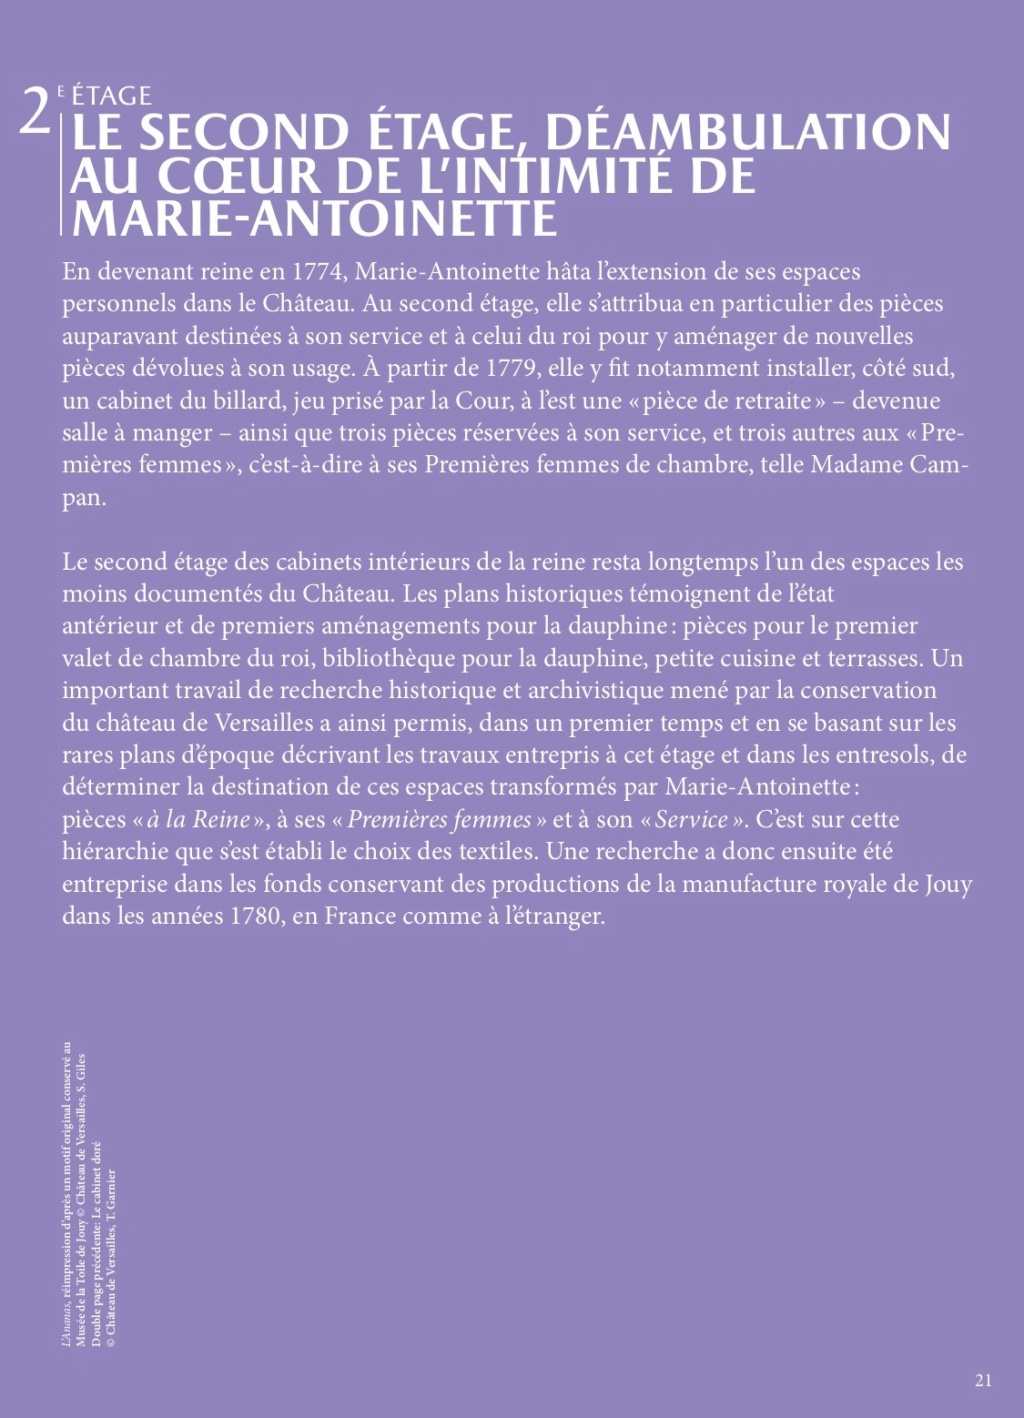 Les cabinets intérieurs de Marie-Antoinette au château de Versailles - Page 3 Dp_cab22